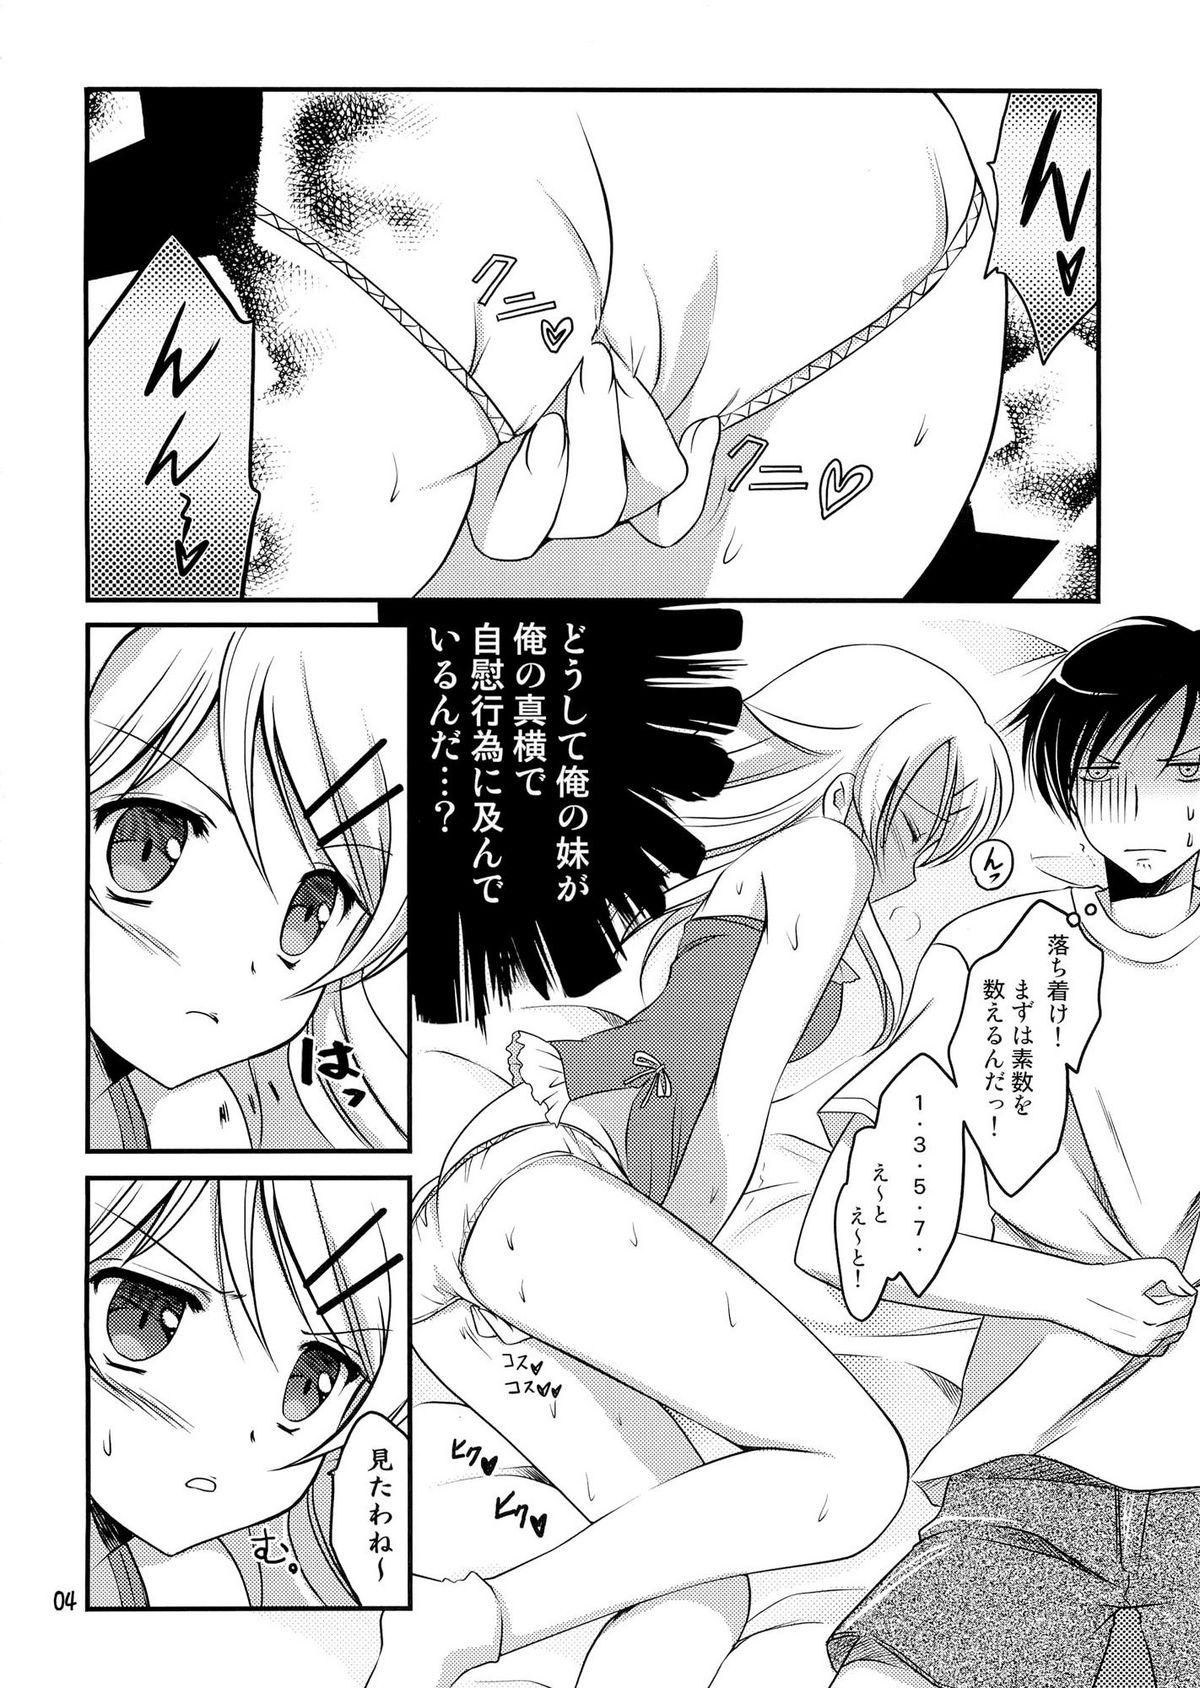 Exgirlfriend Imouto Biyori - Ore no imouto ga konna ni kawaii wake ga nai Bedroom - Page 5